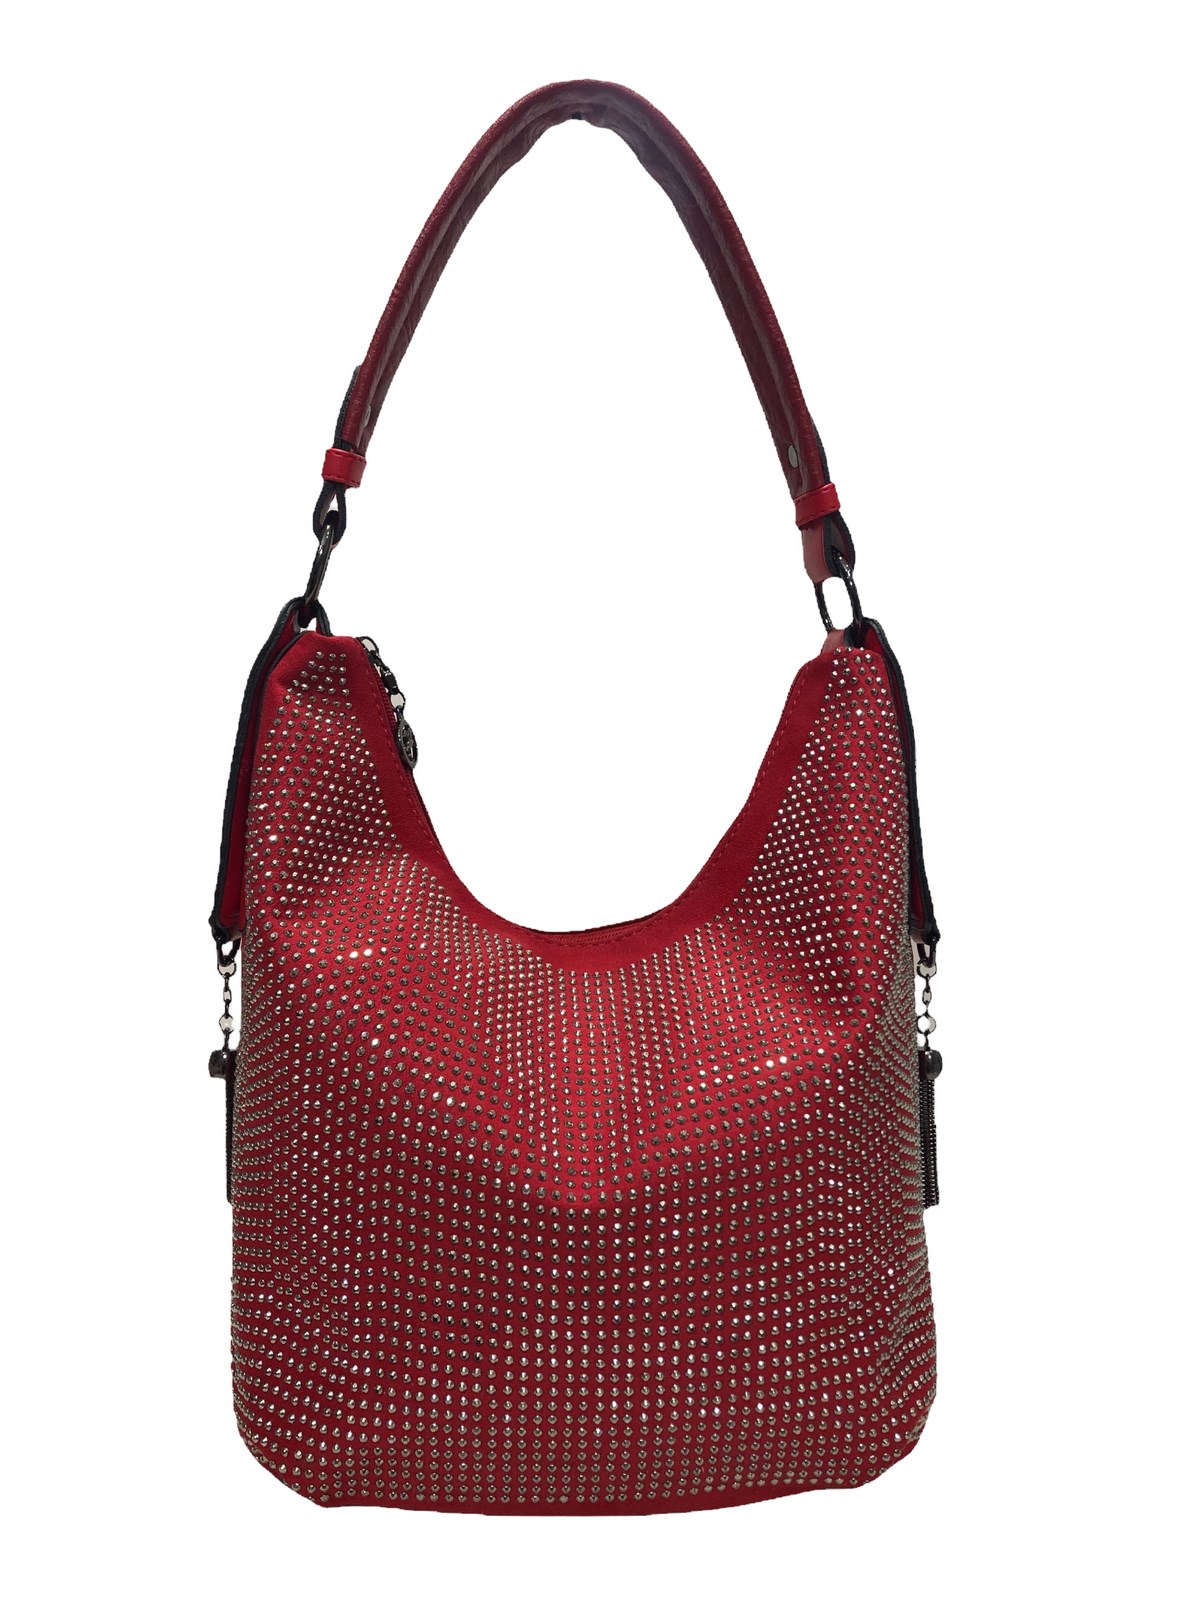 Nas Bag Kırmızı taşlı kadın kol çantası 25cm30cm |elizabell.com.tr